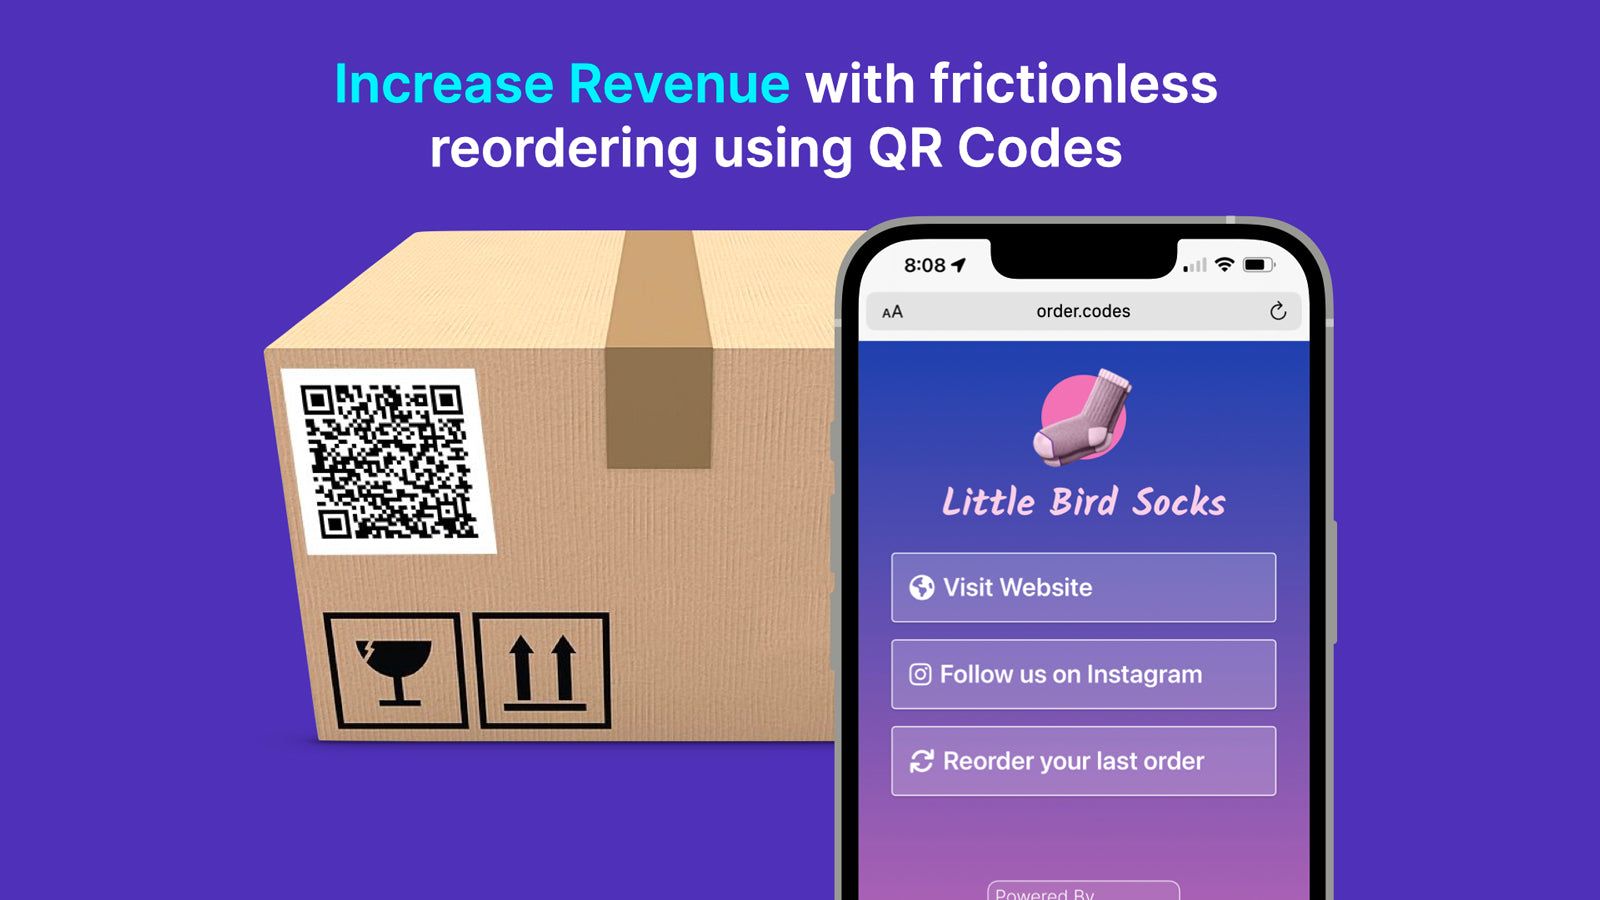 Increase revenue using QR Codes